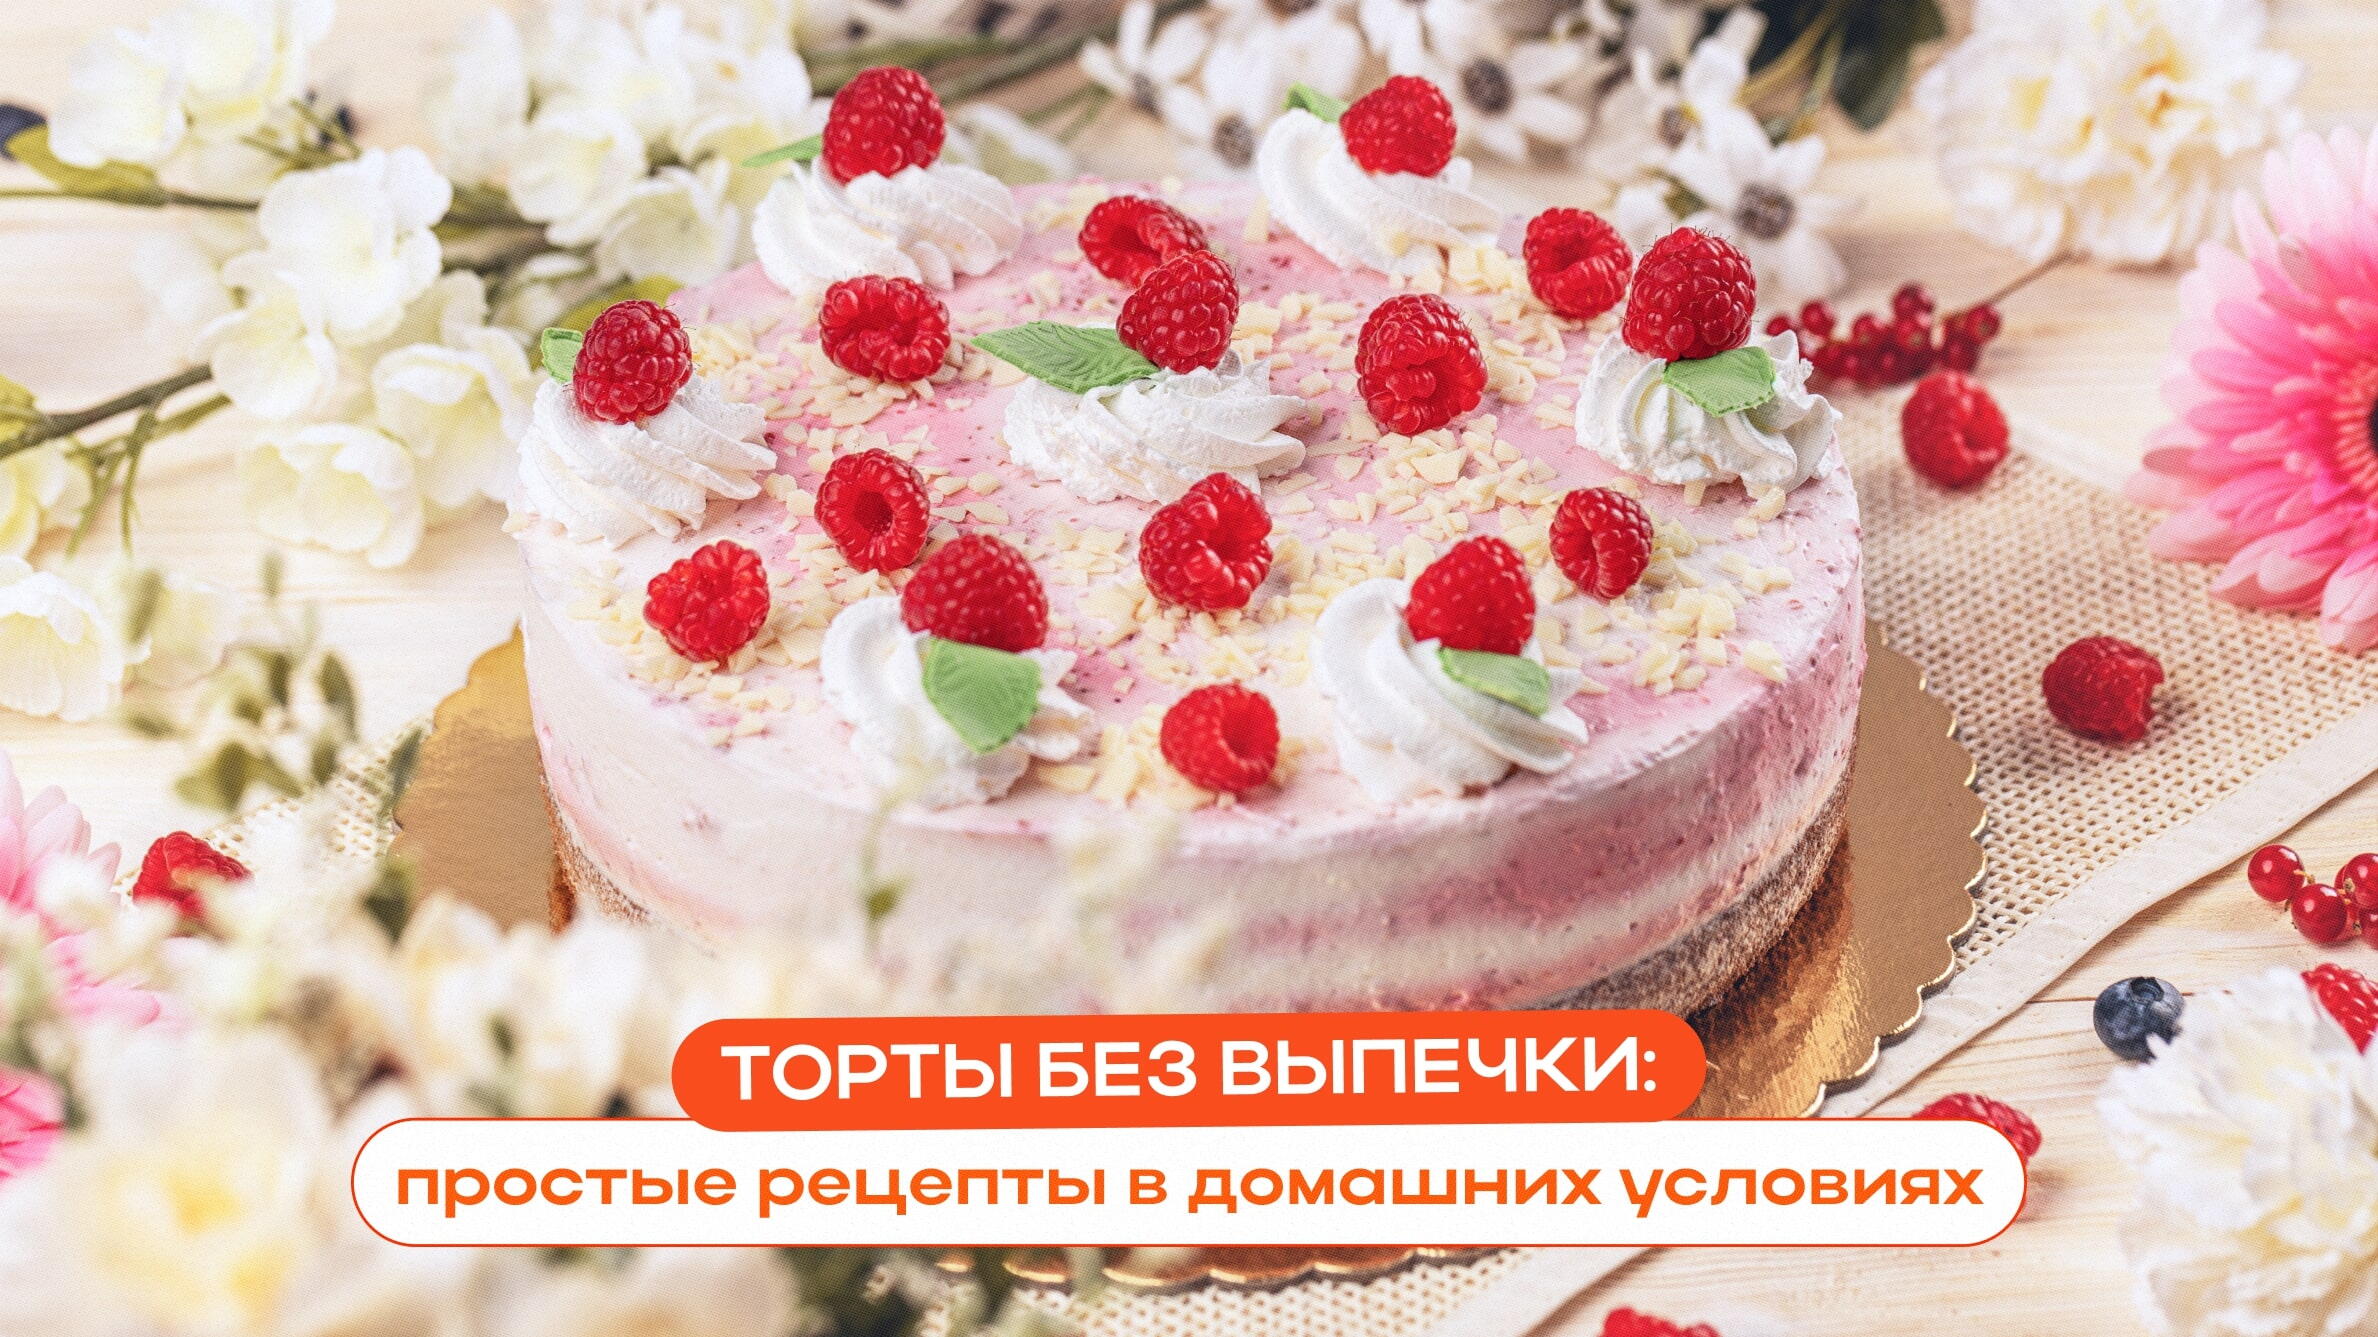 Торт (более рецептов с фото) - рецепты с фотографиями на Поварёgkhyarovoe.ru